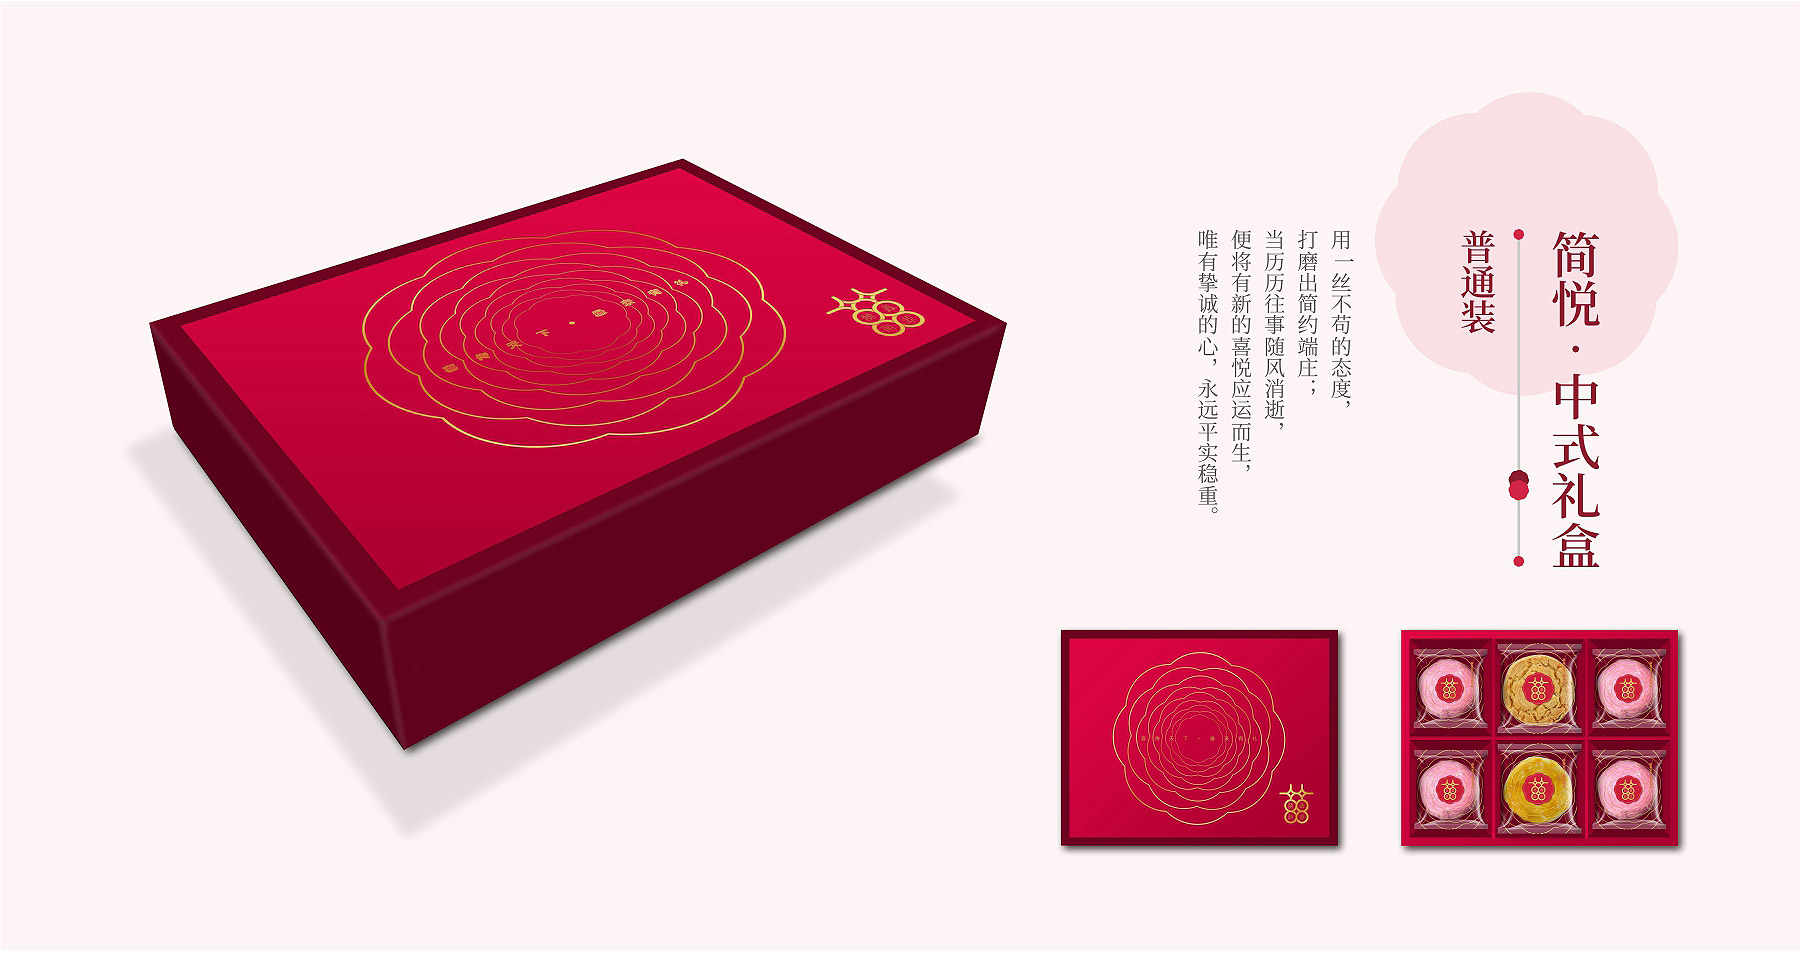 鑫源喜饼品牌全案策略设计创意包装设计